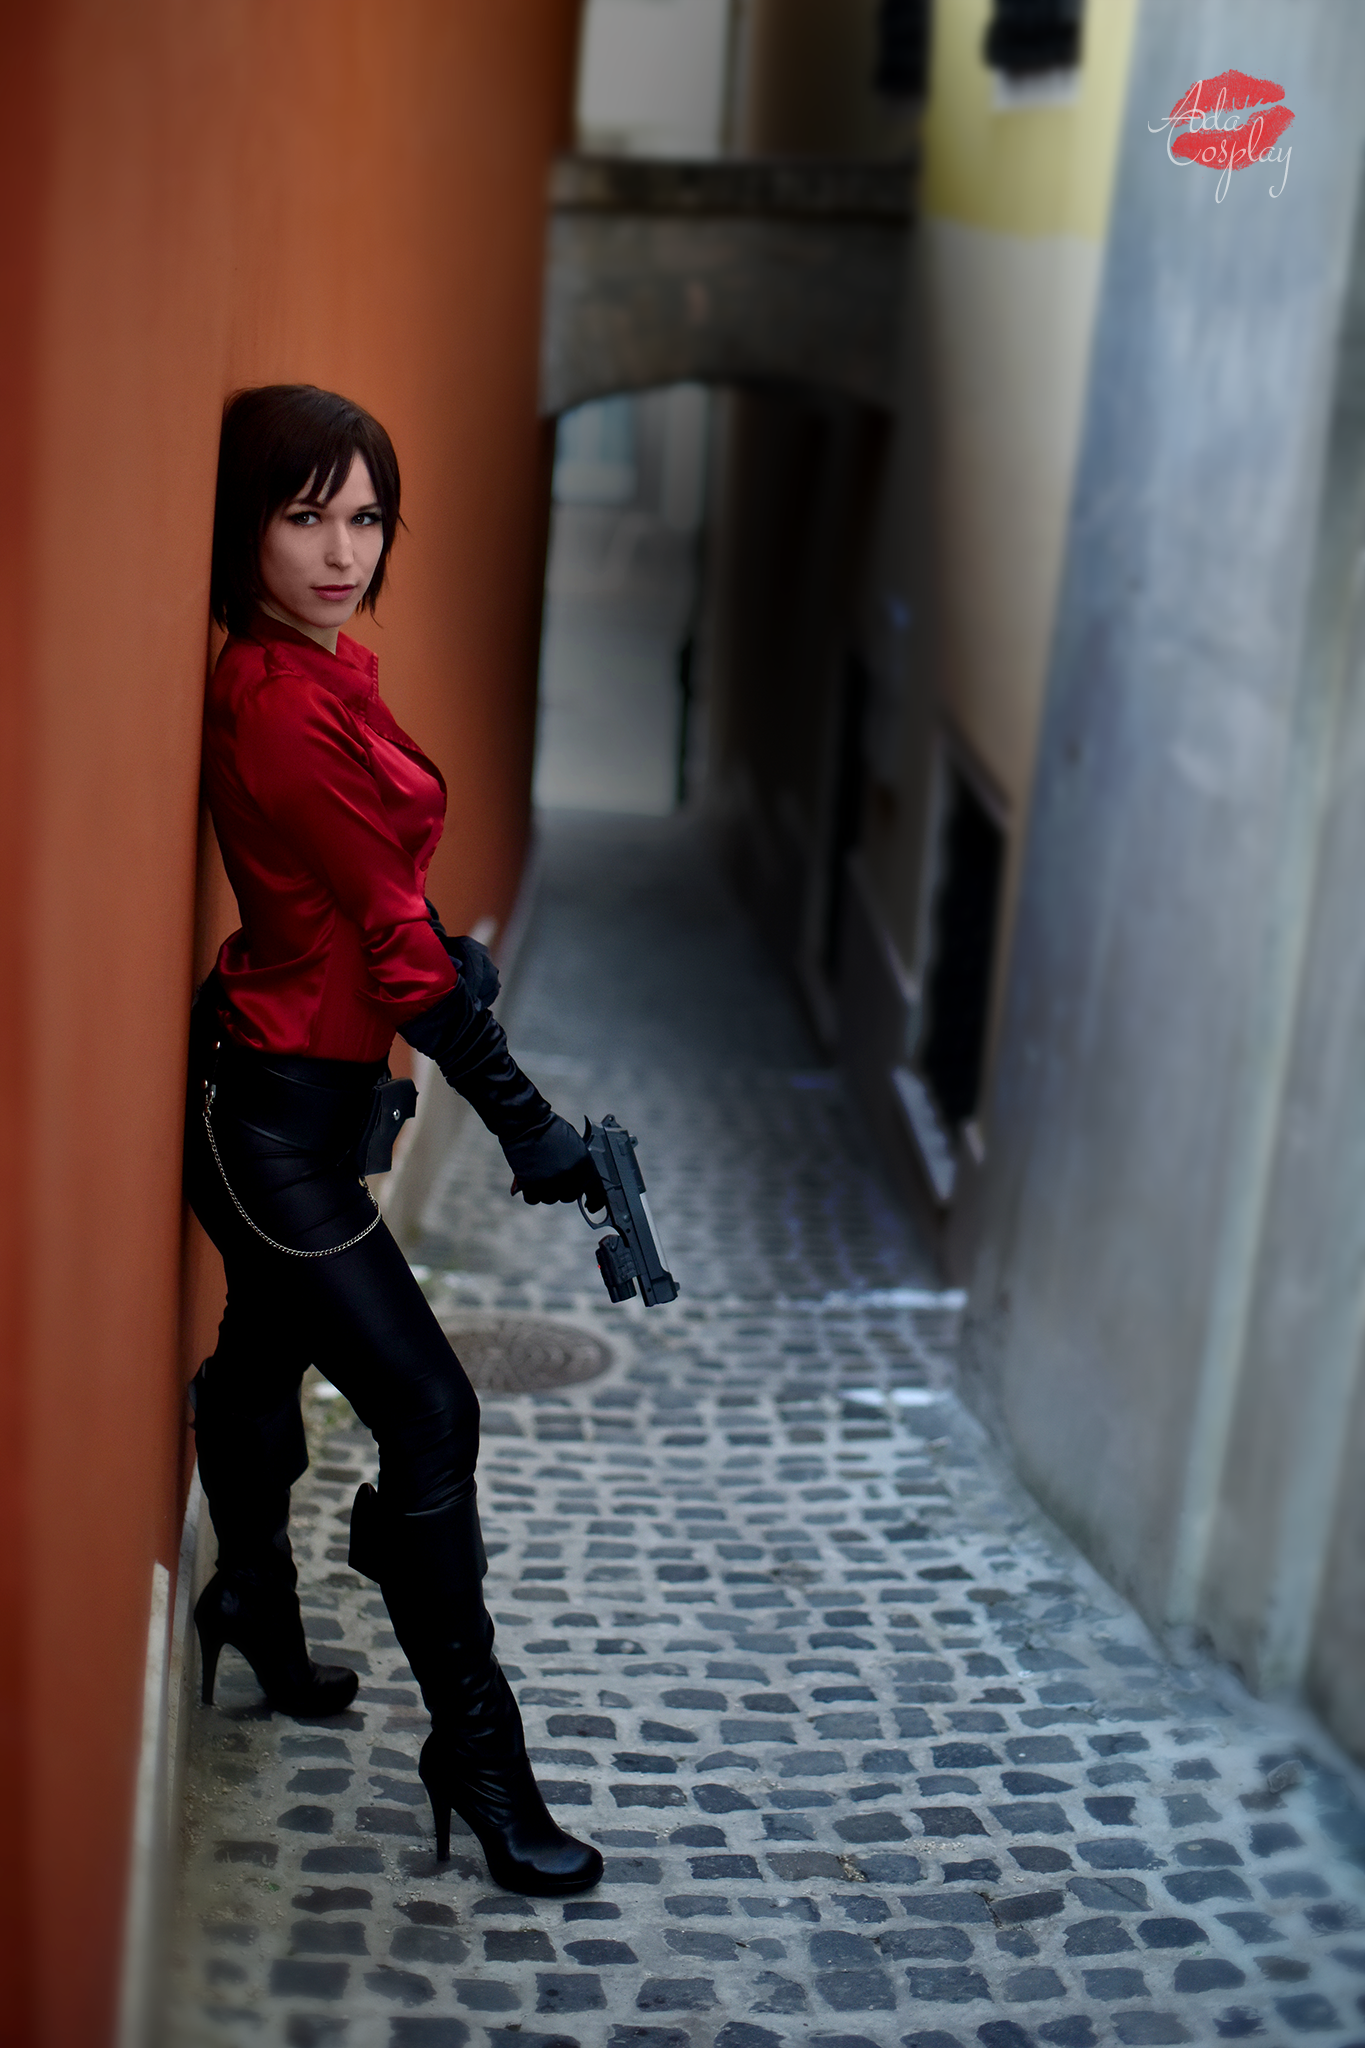 Ada Wong Resident Evil 6